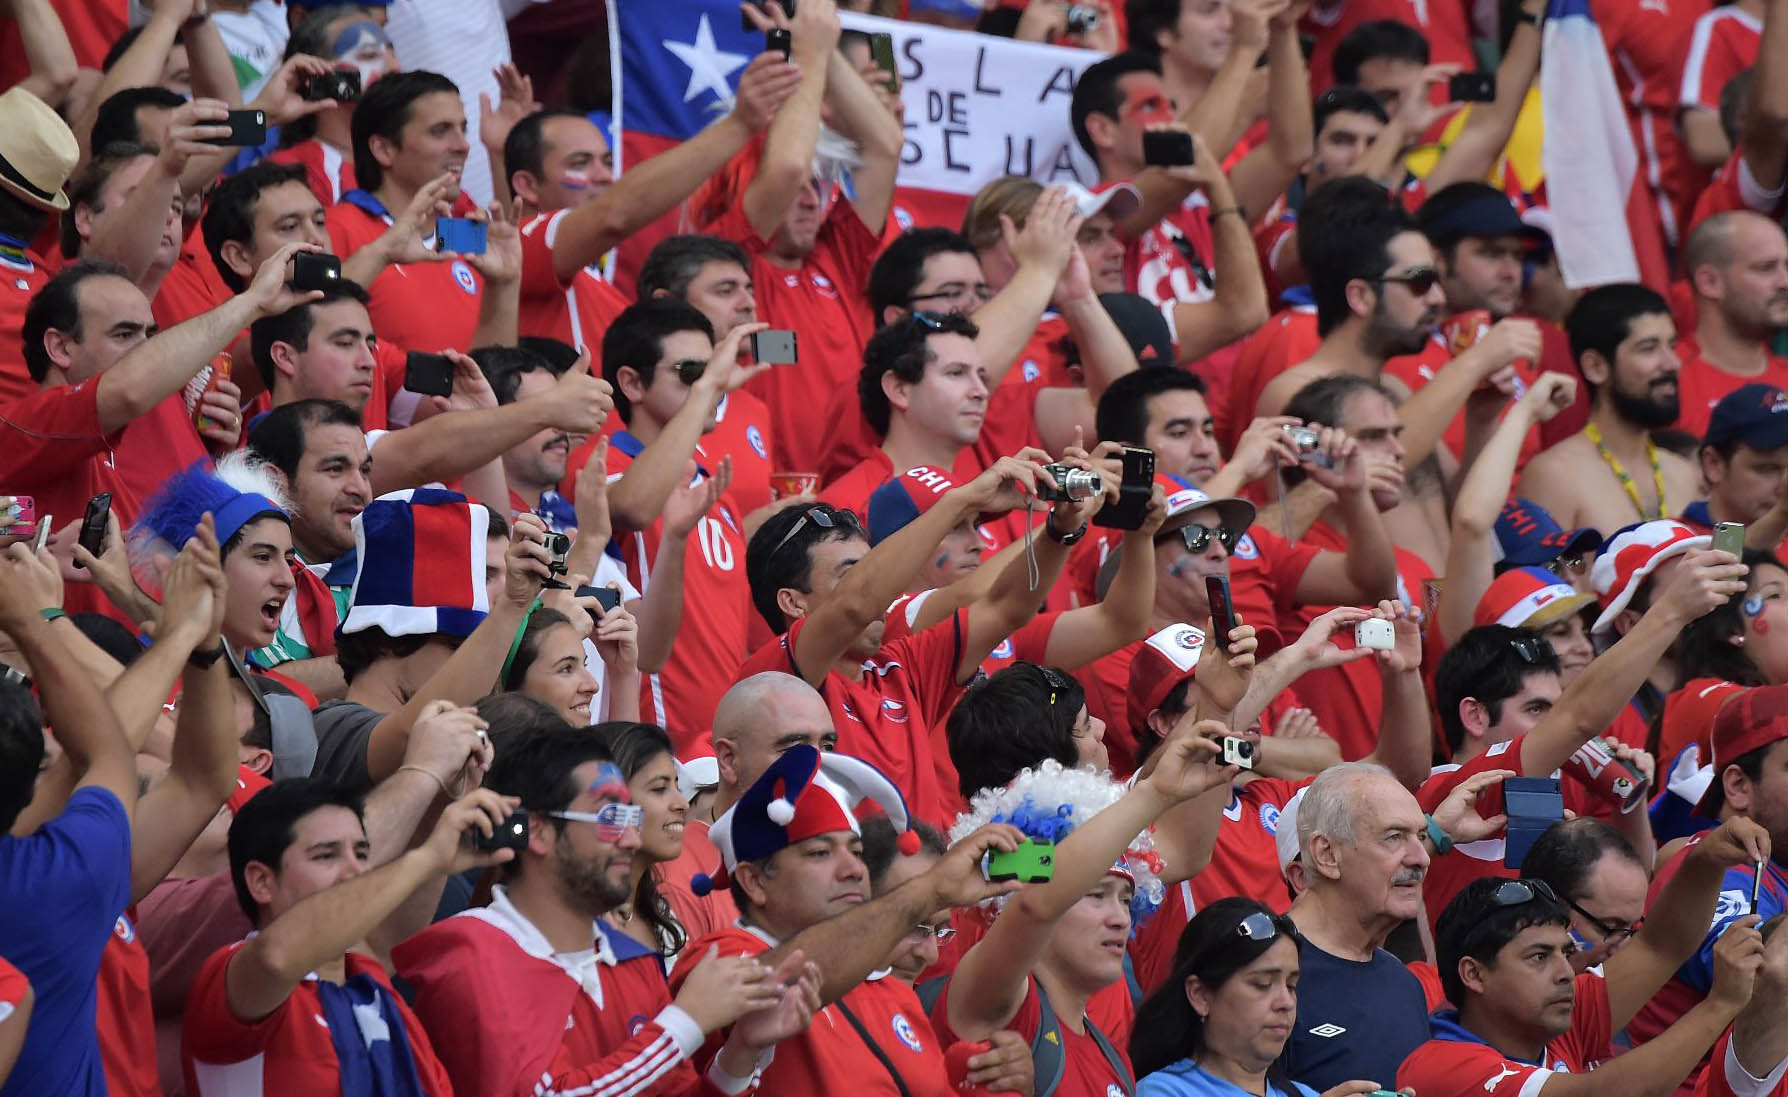 La Federación Chilena de Fútbol tiene una nueva amonestación parte del ente organizador debido a la conducta de sus aficionados